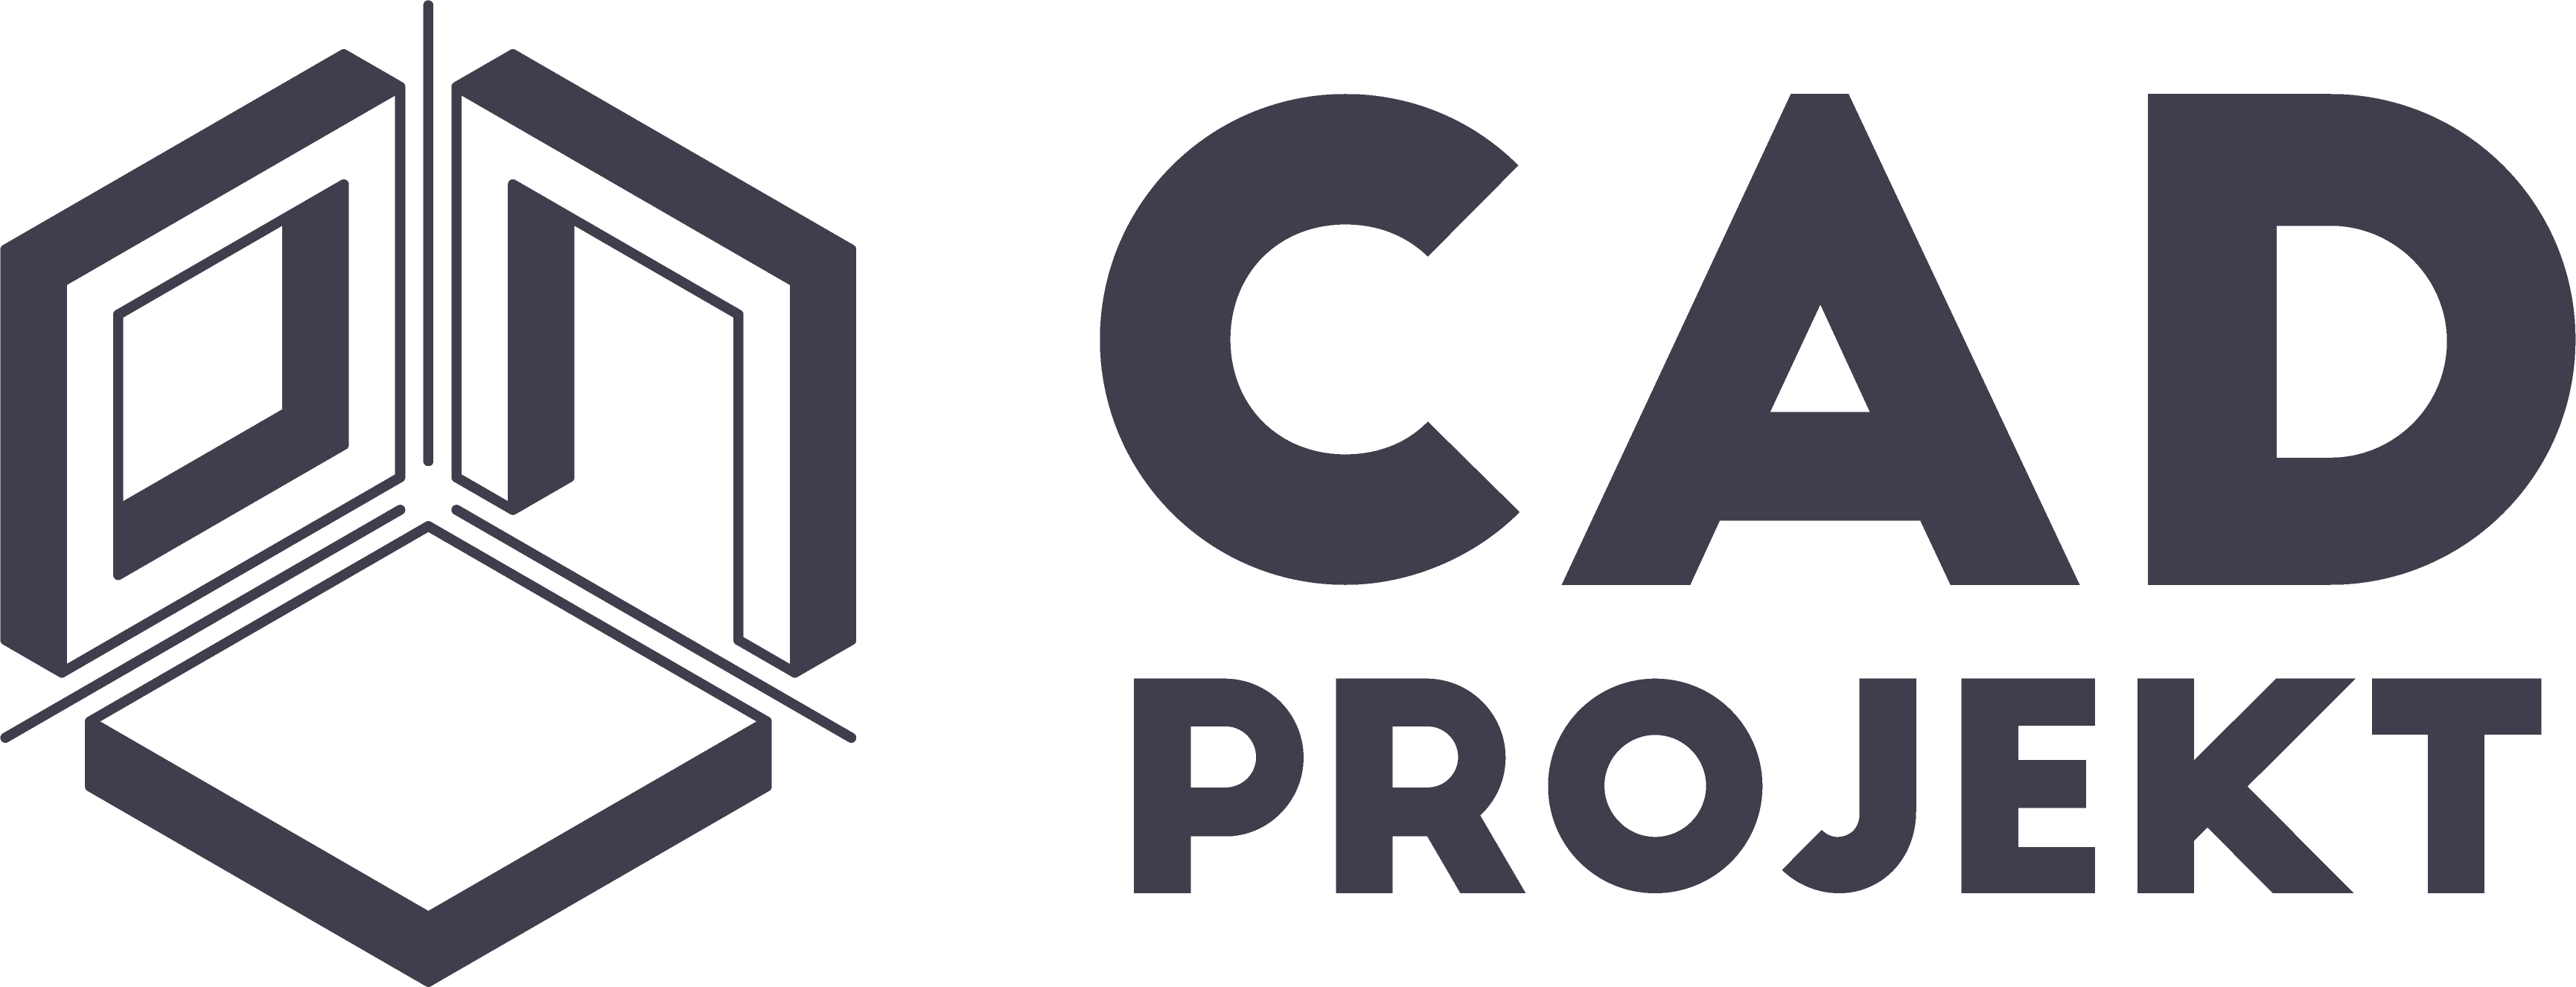 CAD Logo - CAD projekt